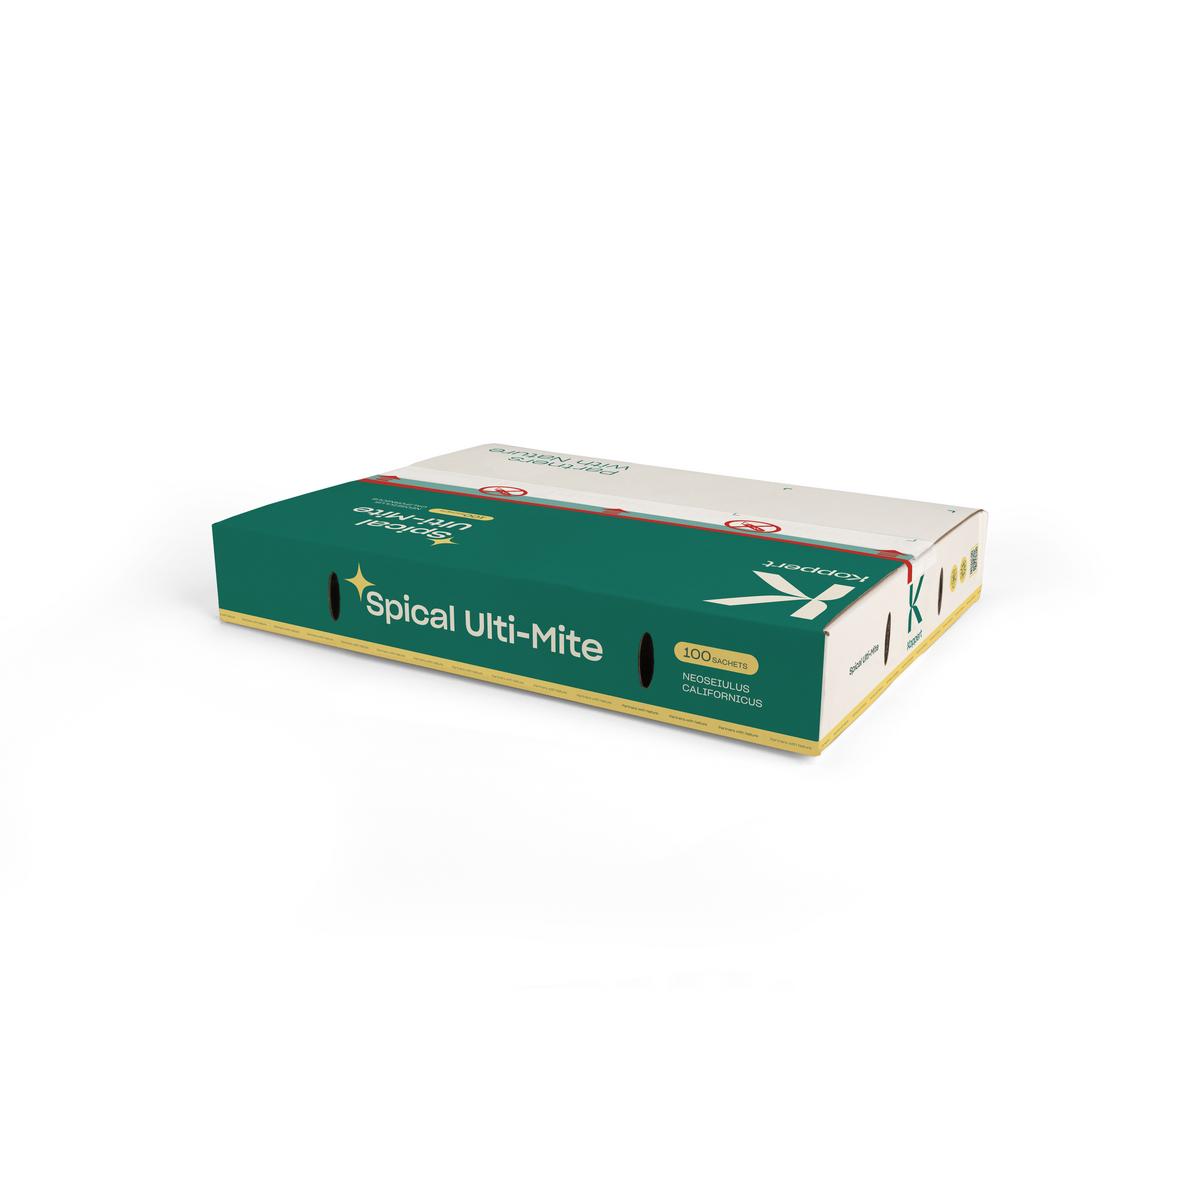 Boîte de Spical Ulti-Mite de petit format, 100g, vert et blanc